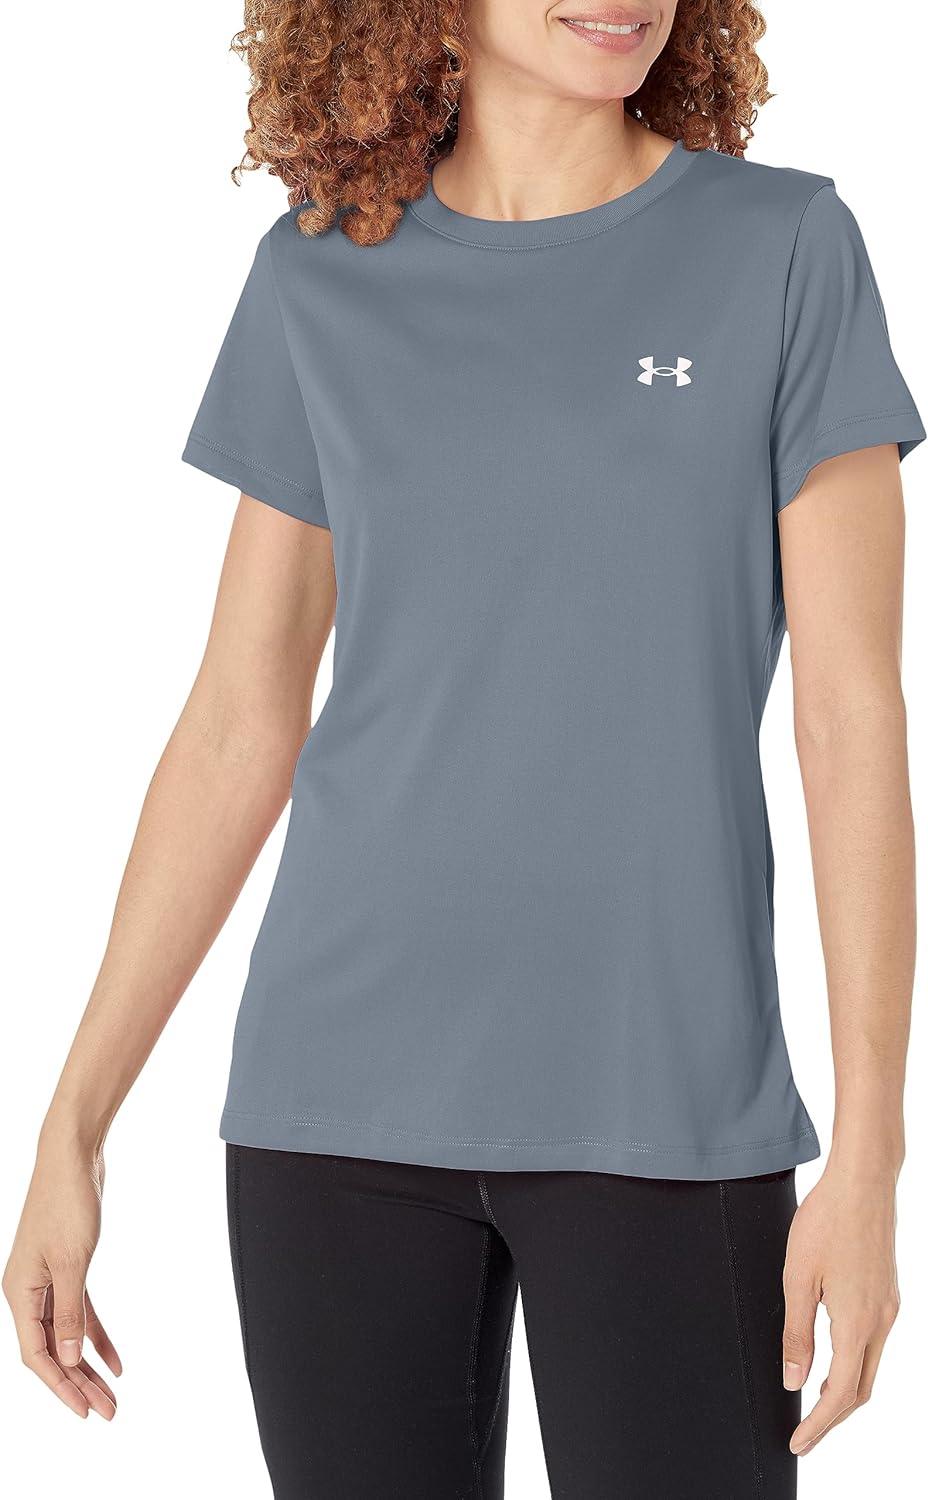 Under Armour Women's Tech Short-Sleeve T-Shirt - Grovano